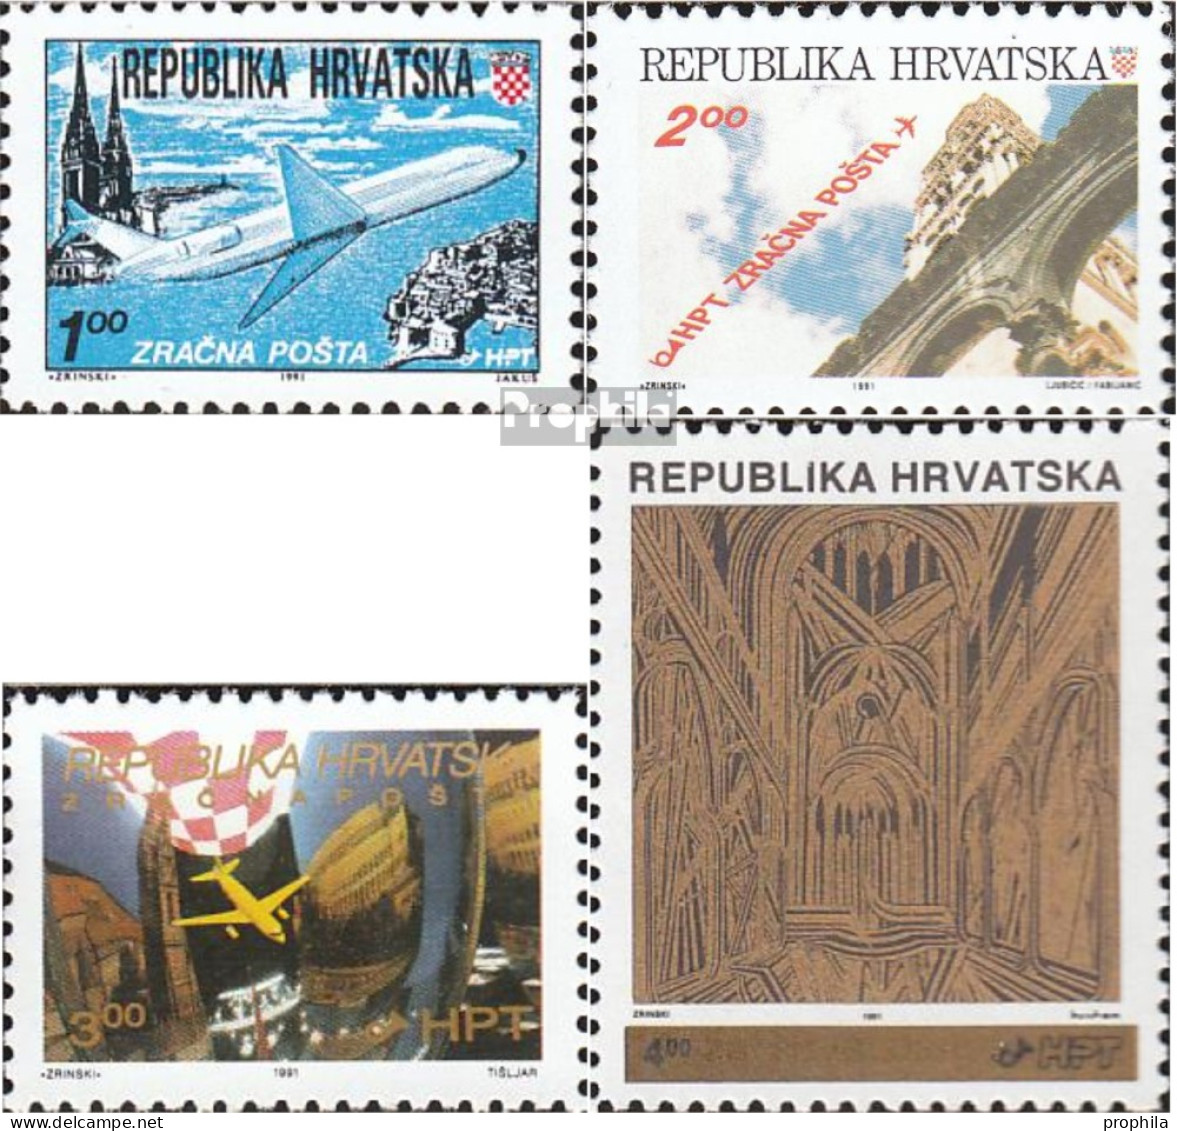 Kroatien 179A,180A A,181,182A (kompl.Ausg.) Postfrisch 1991 Flugpost, Aufdruckausgabe - Croazia